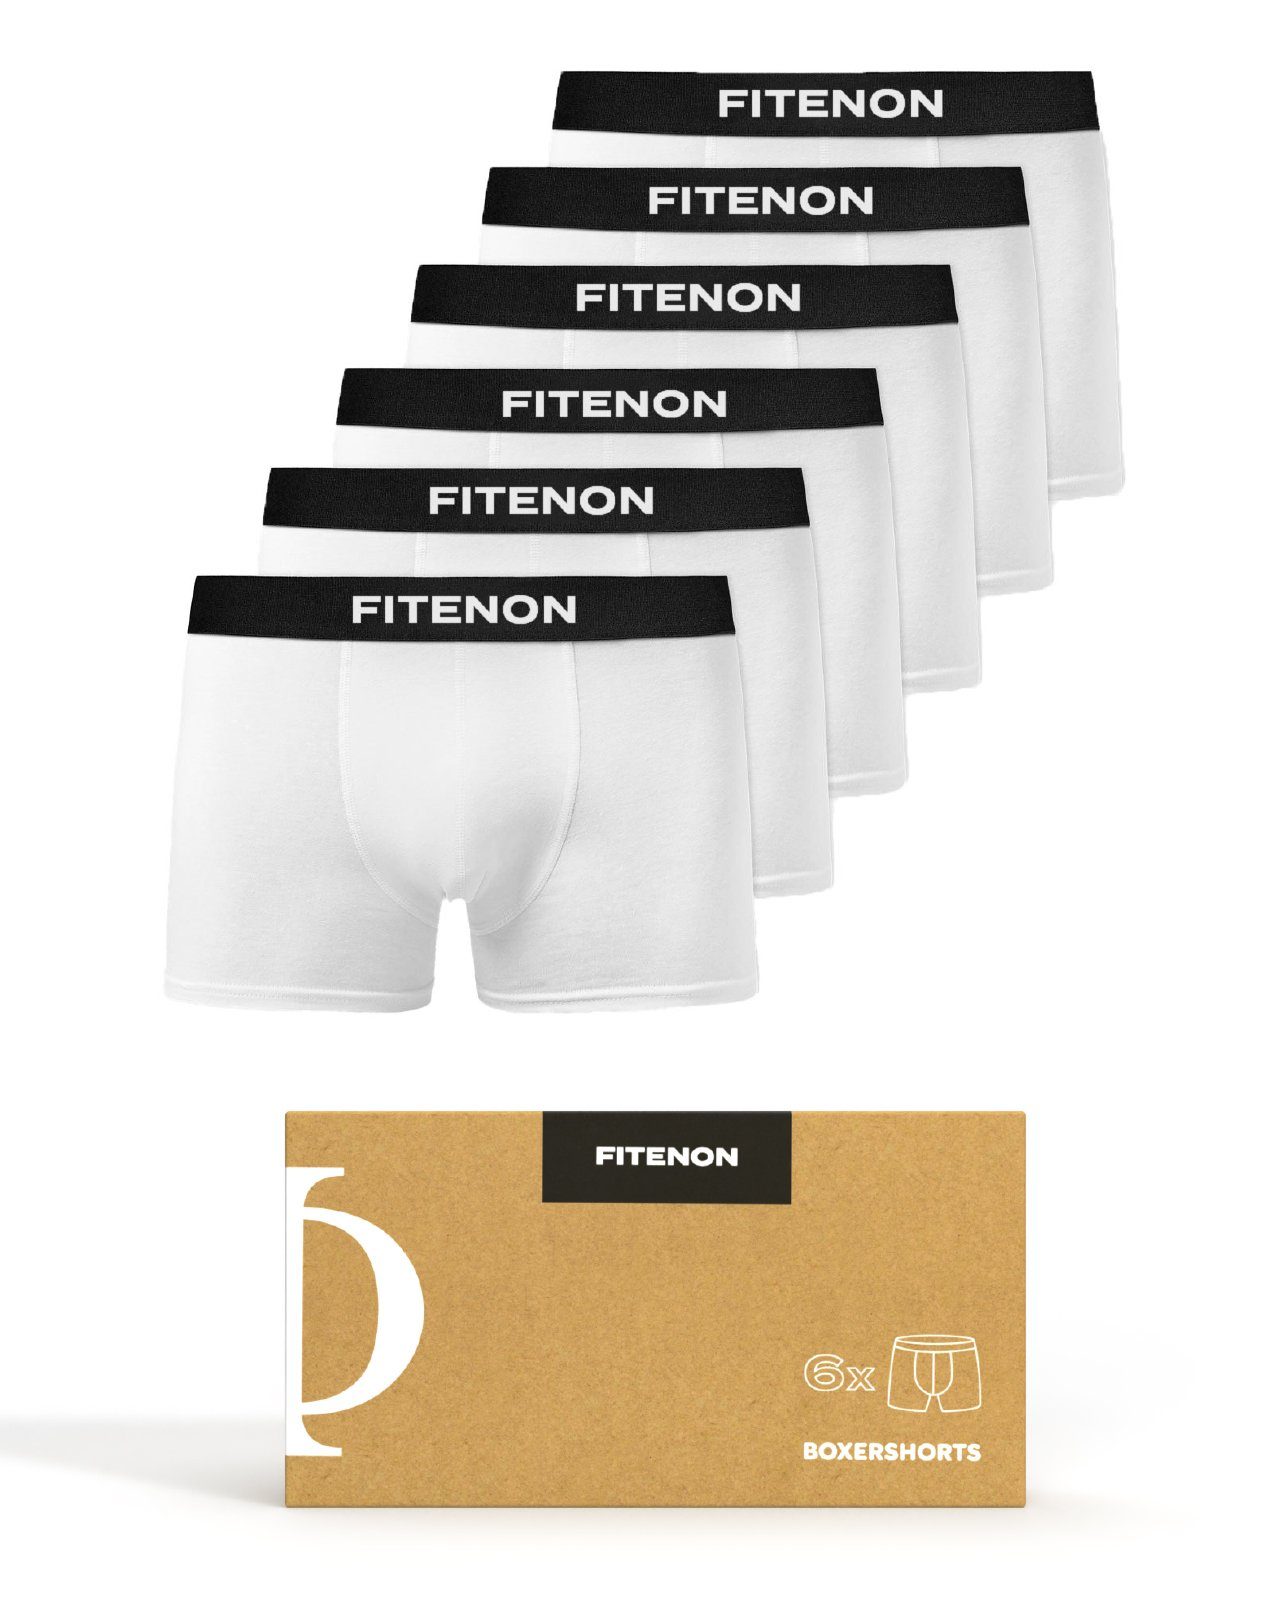 FITENON Boxershorts Herren Unterhosen, Unterwäsche, ohne kratzenden Zettel, Baumwolle (6 er Set) mit Logo-Elastikbund 6x Weiß